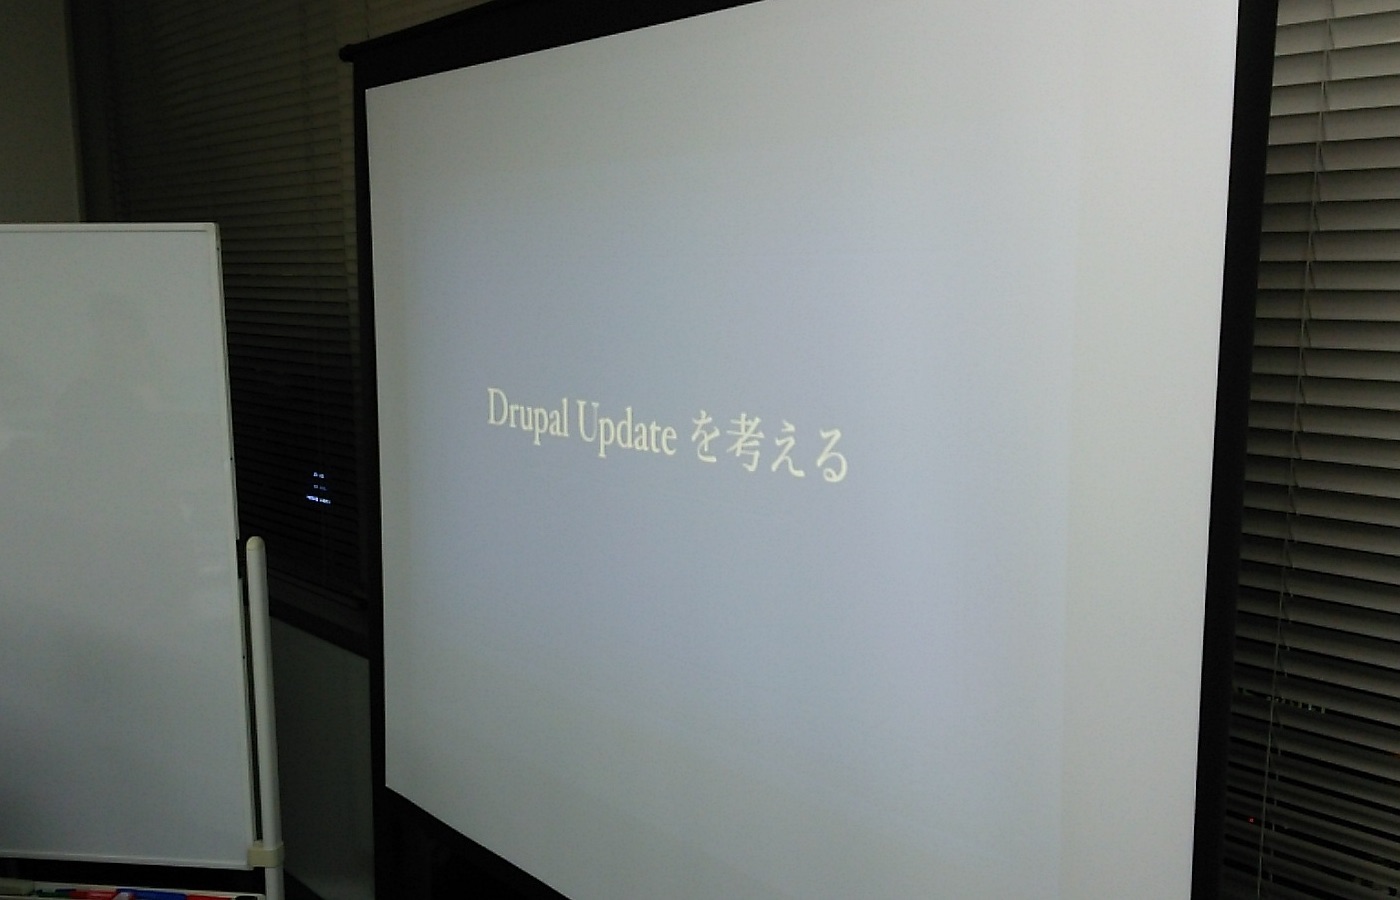 Drupal Cafe 2014 Vo.25 Drupal Update について考える